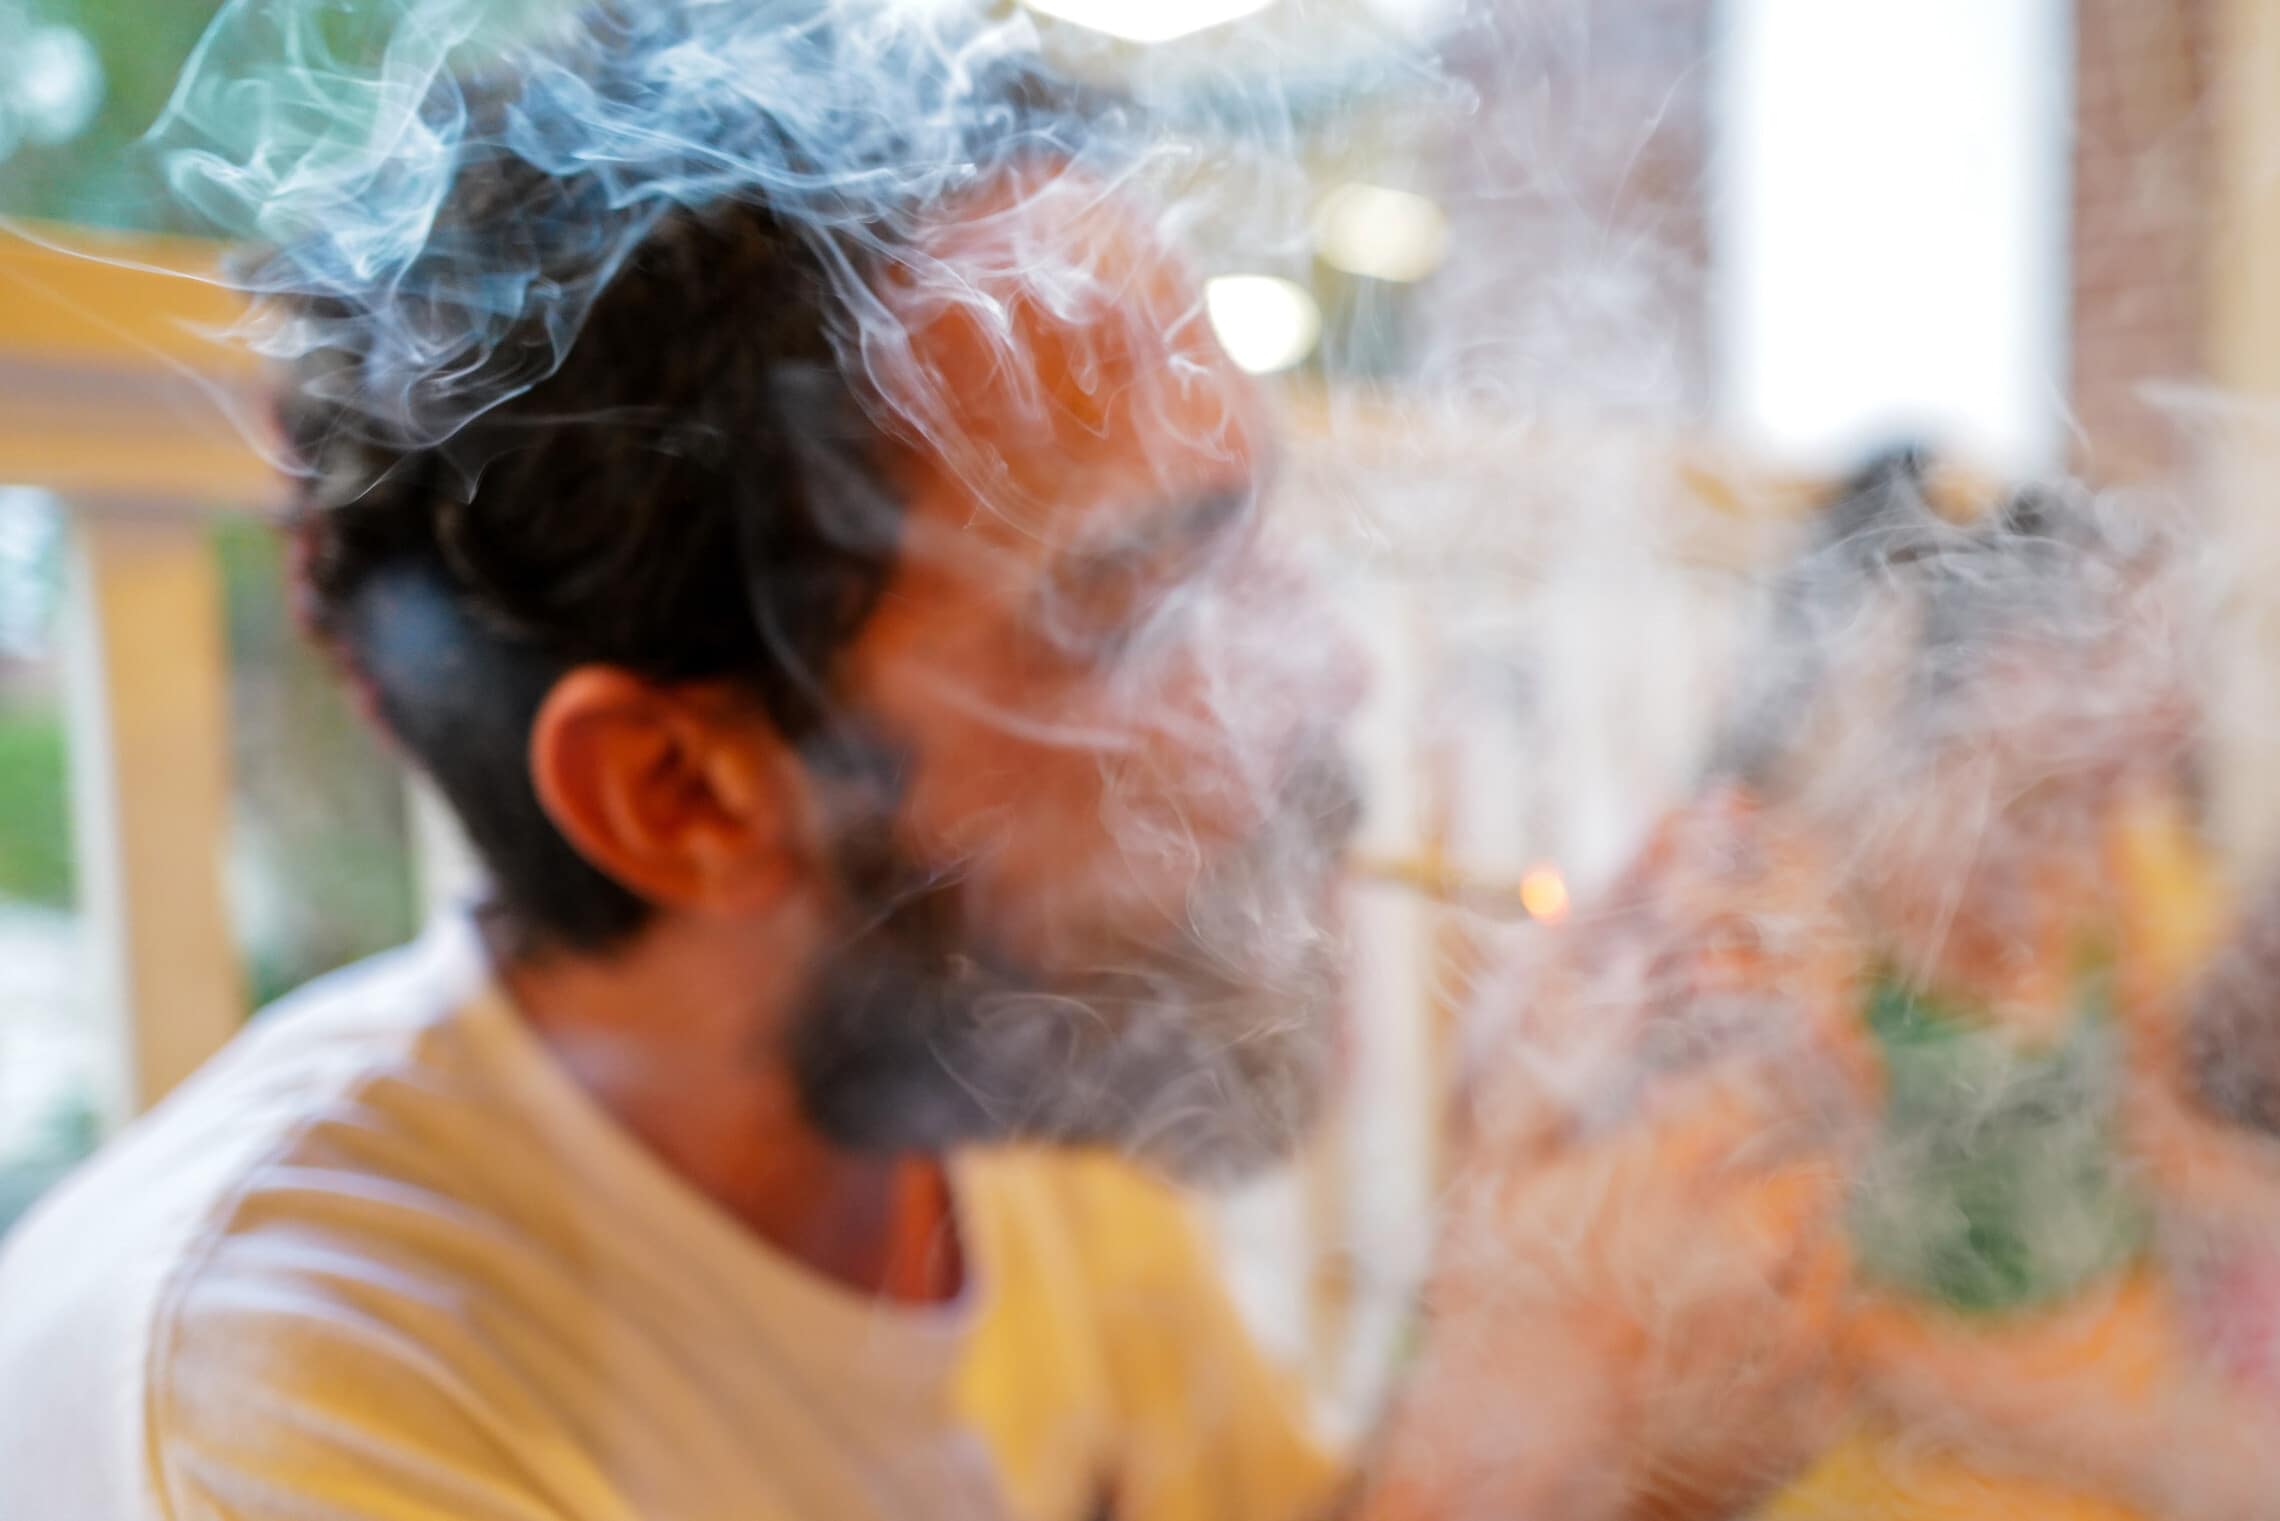 אילוסטרציה: מעשן קנאביס. למצולם אין קשר לכתבה (צילום: מיכאל גלעדי/פלאש90)